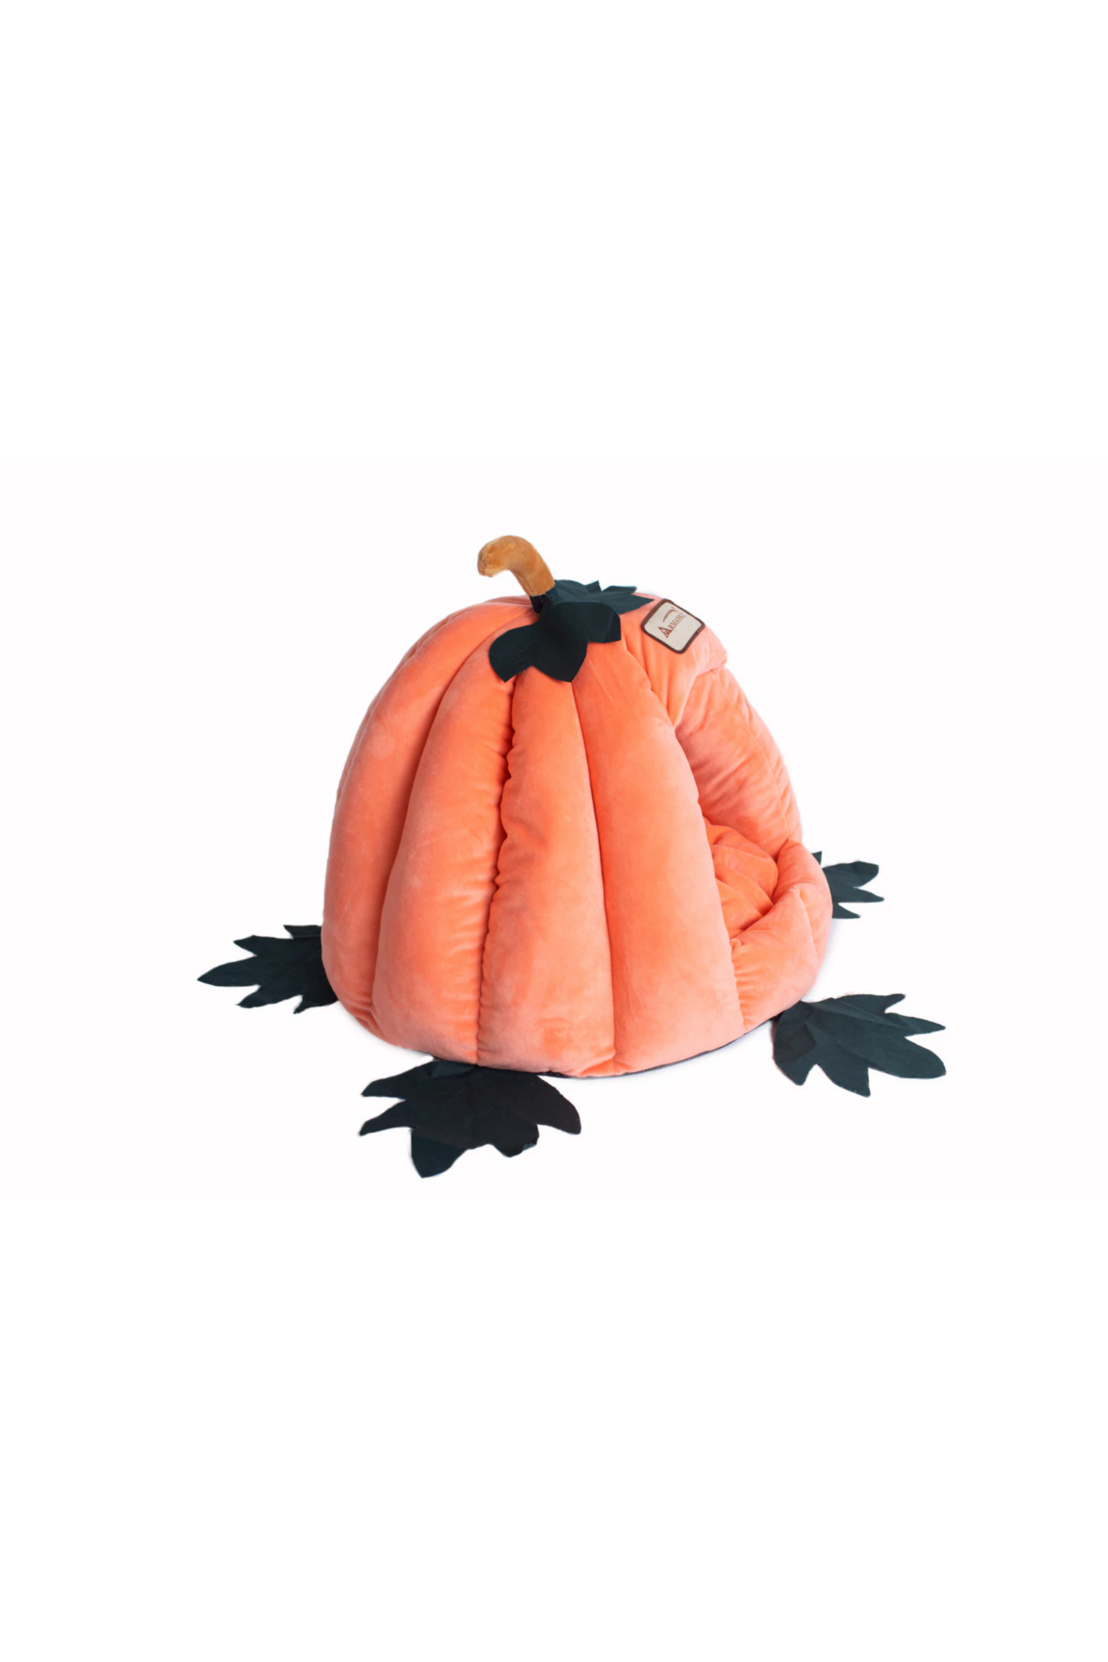 Pumpkin Cat Bed